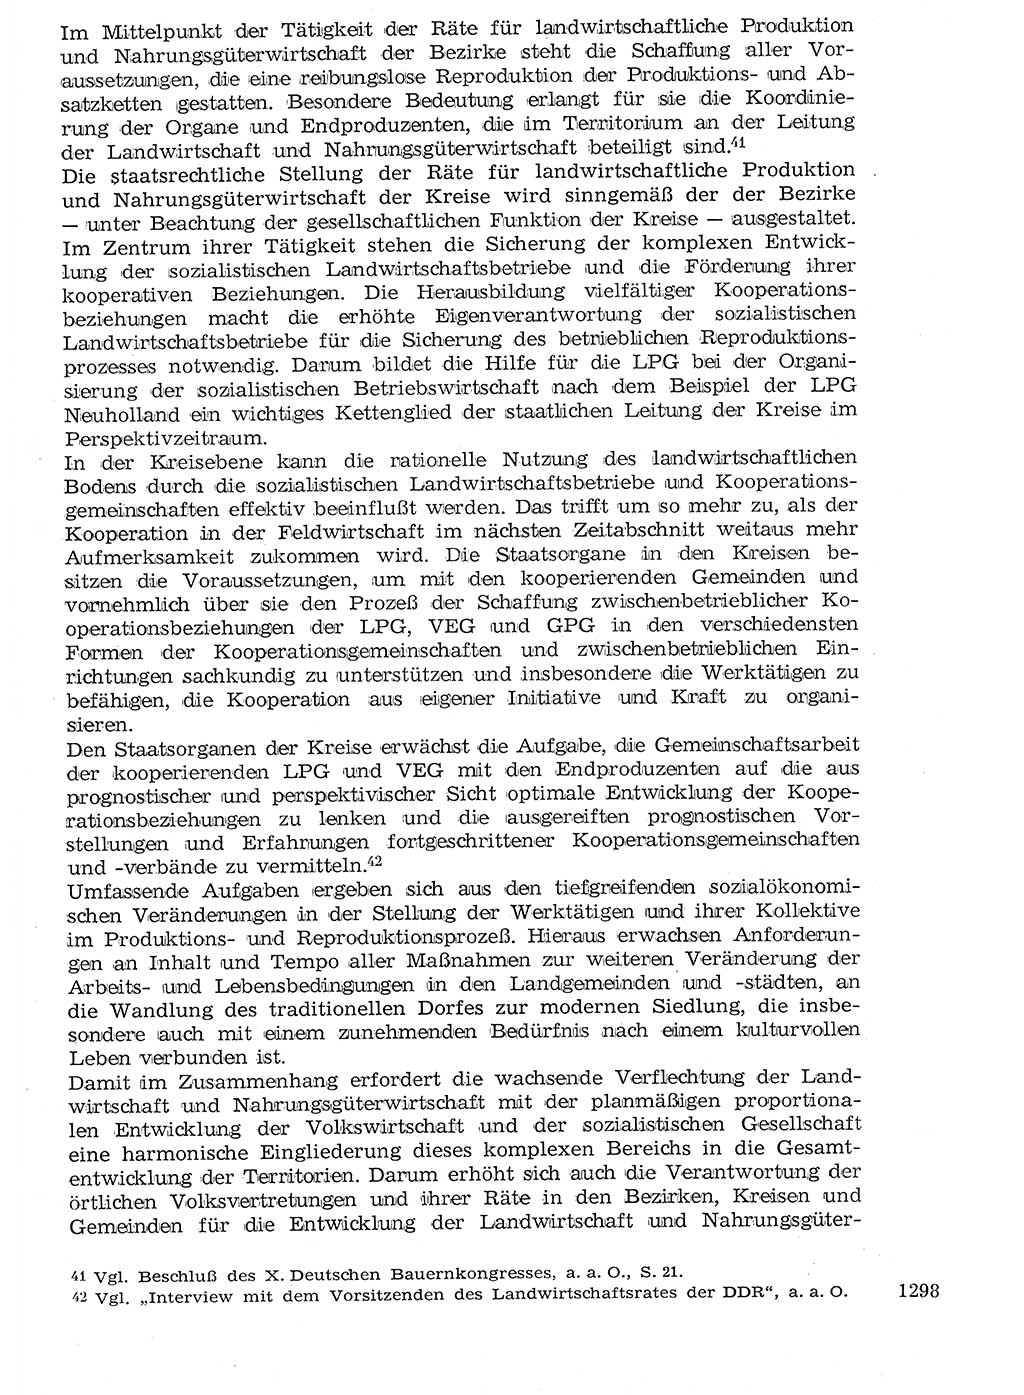 Staat und Recht (StuR), 17. Jahrgang [Deutsche Demokratische Republik (DDR)] 1968, Seite 1298 (StuR DDR 1968, S. 1298)